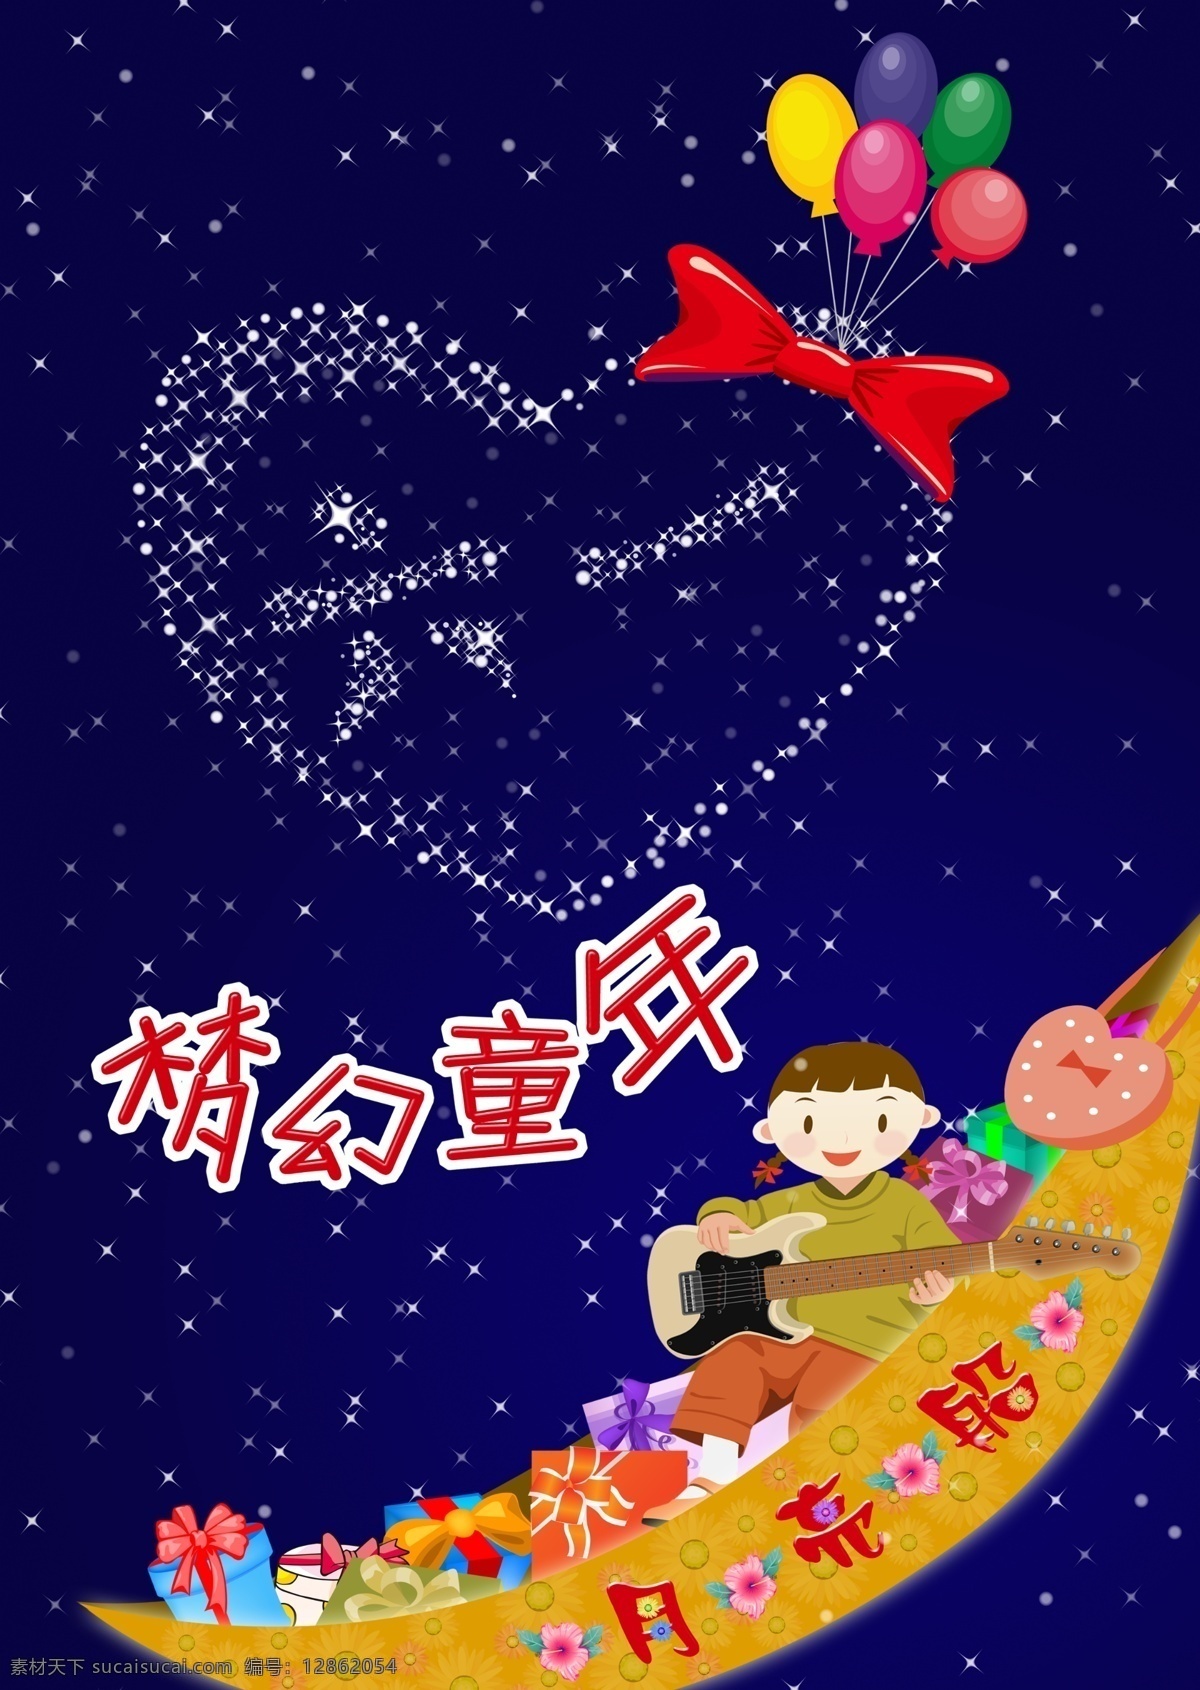 梦幻童年 模版下载 童年 六一 儿童节 心形 星空 星星 月亮 月亮船 吉他 花朵 蝴蝶结 气球 节日素材 源文件 文化艺术 节日庆祝